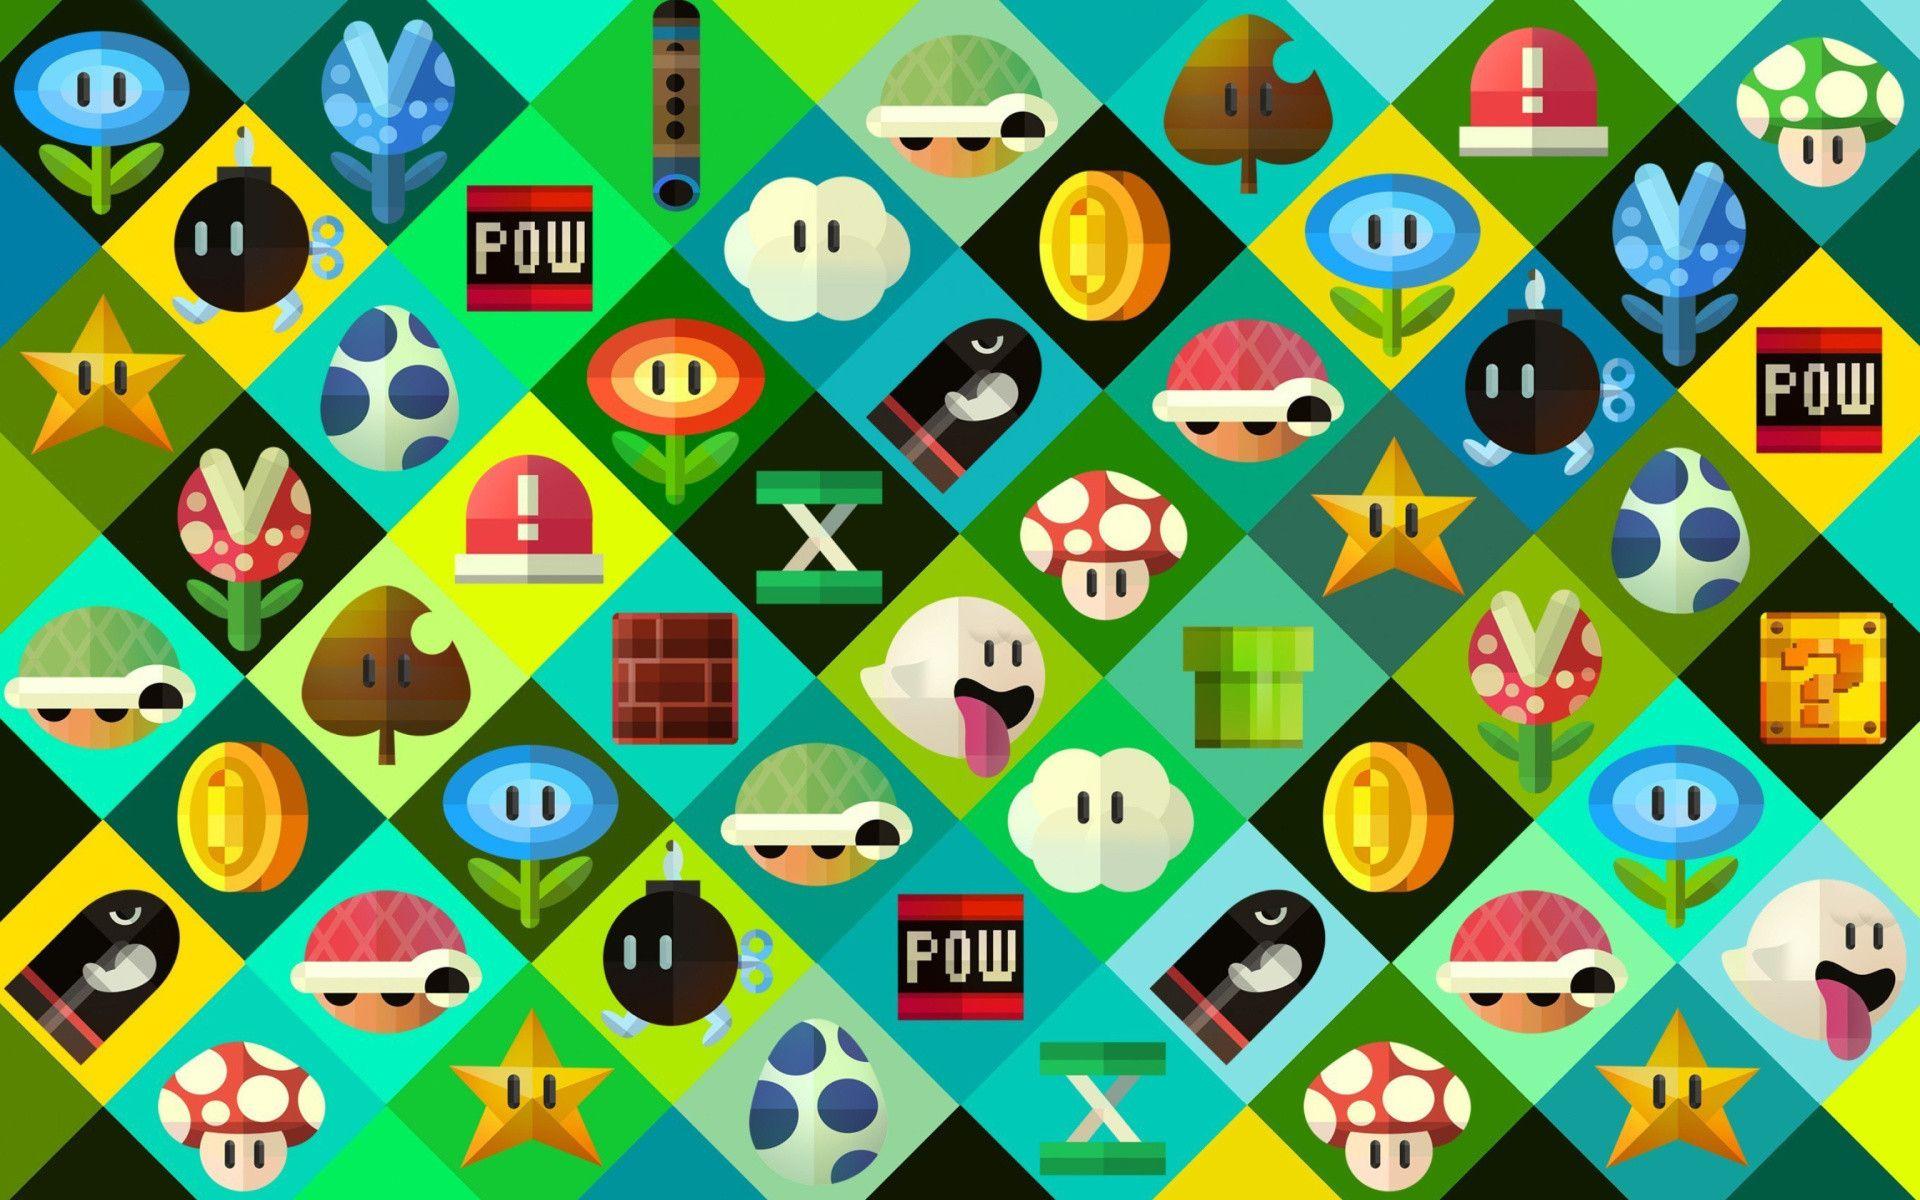 Retro Nintendo Wallpaper